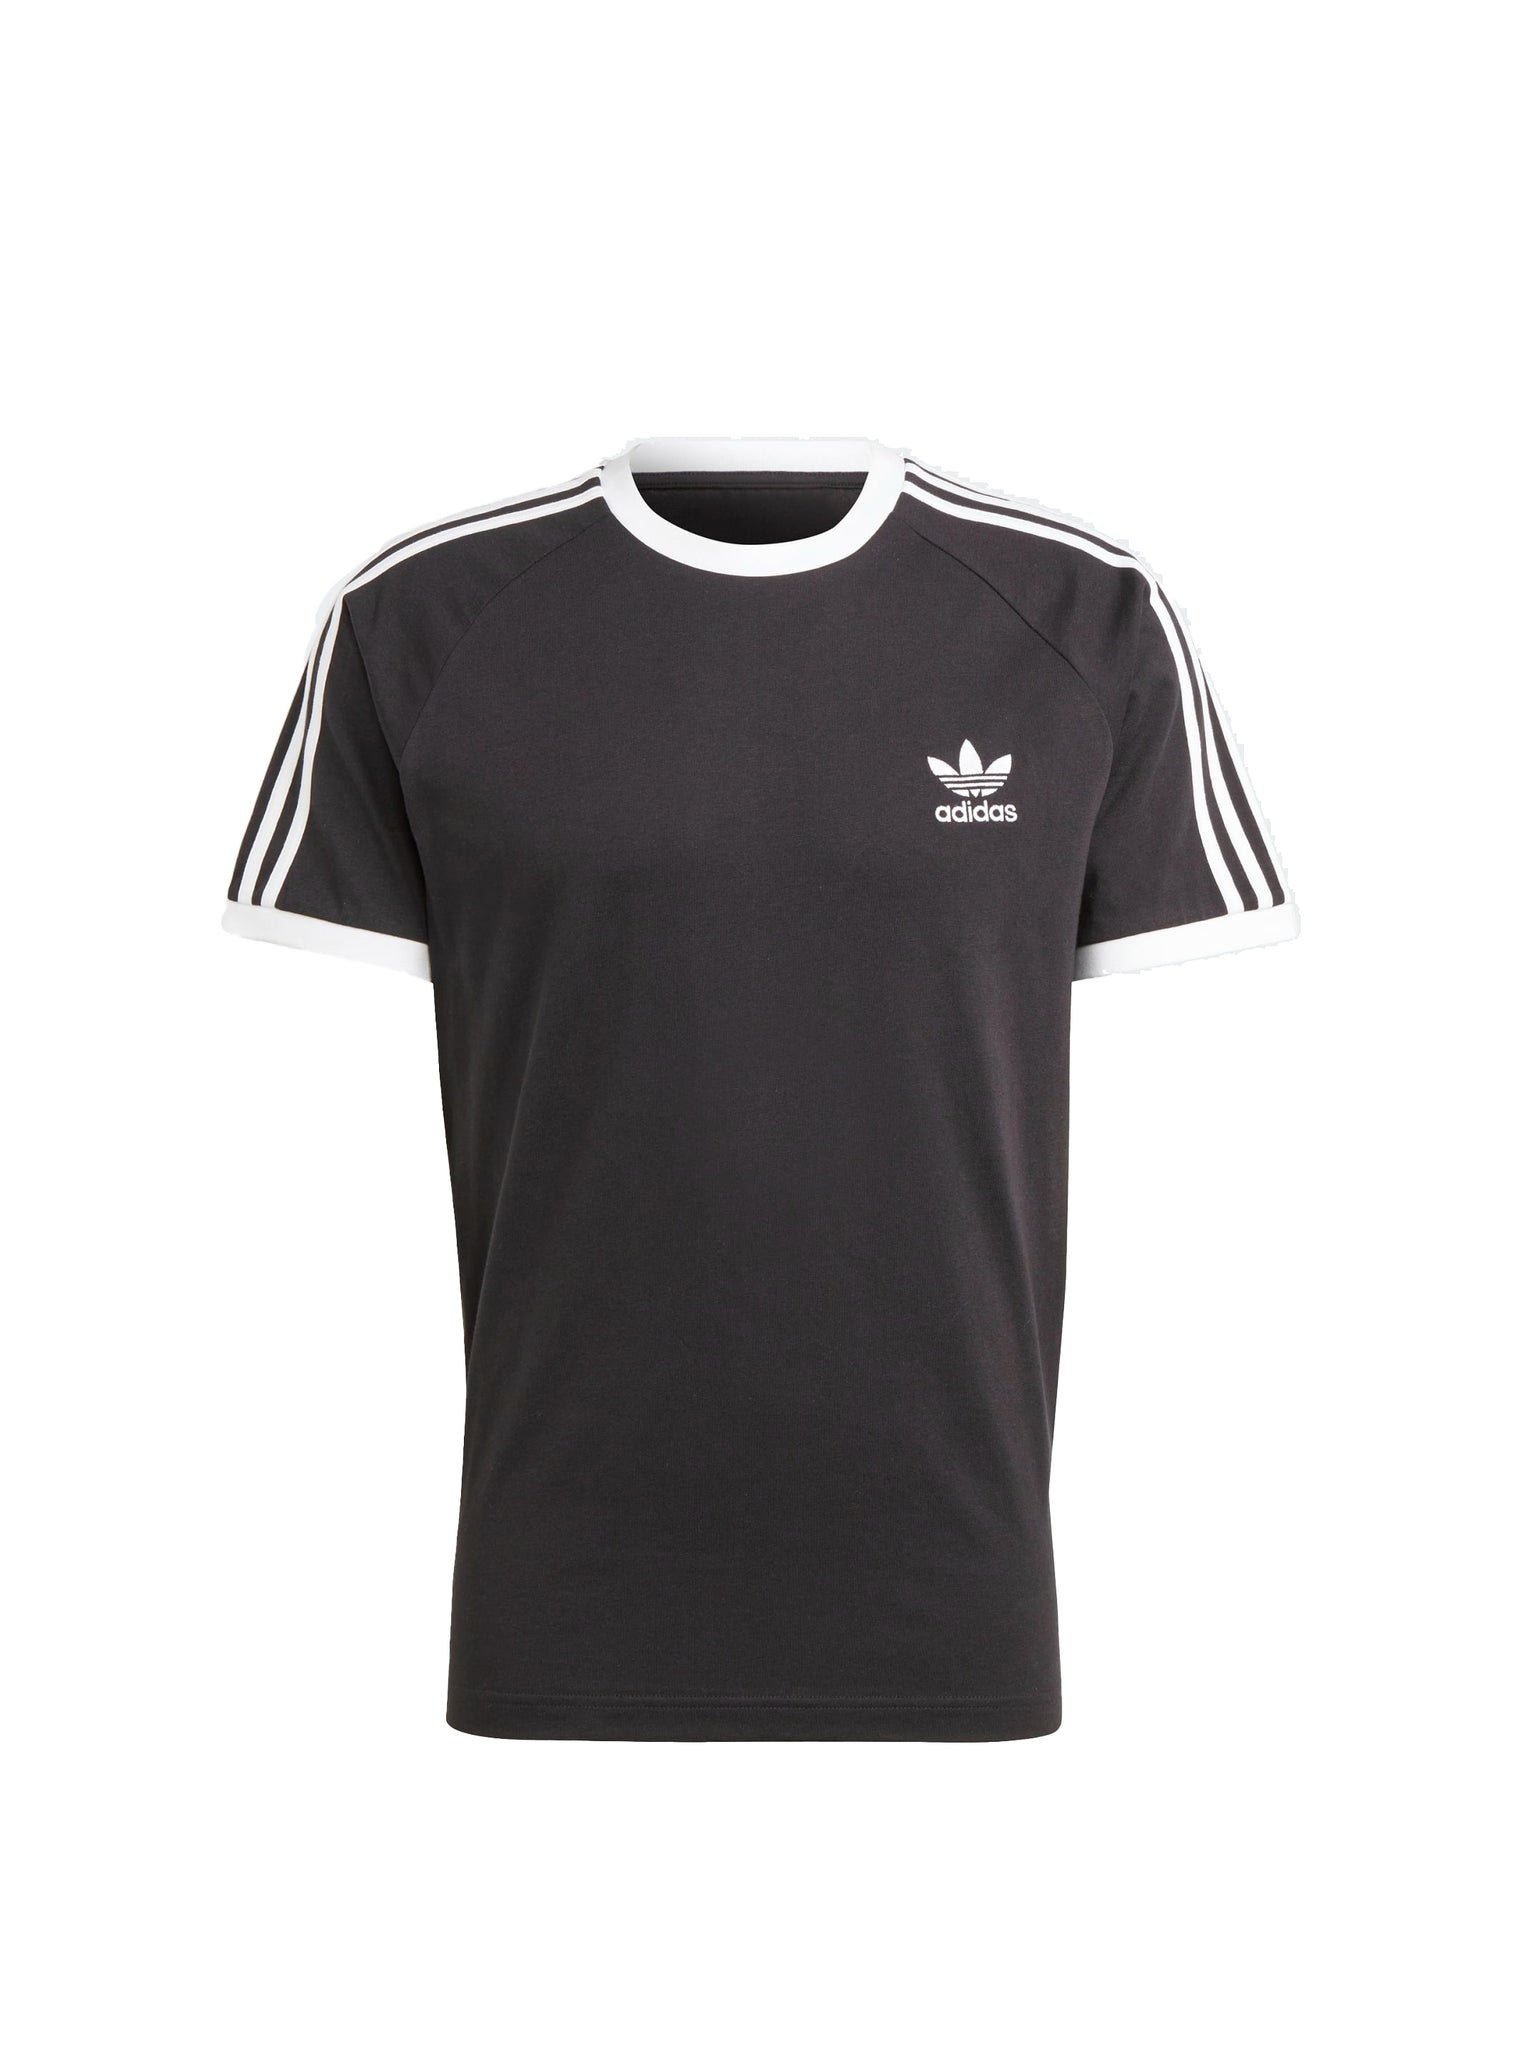 Adidas 3-Stripes Tee Black T-Shirt